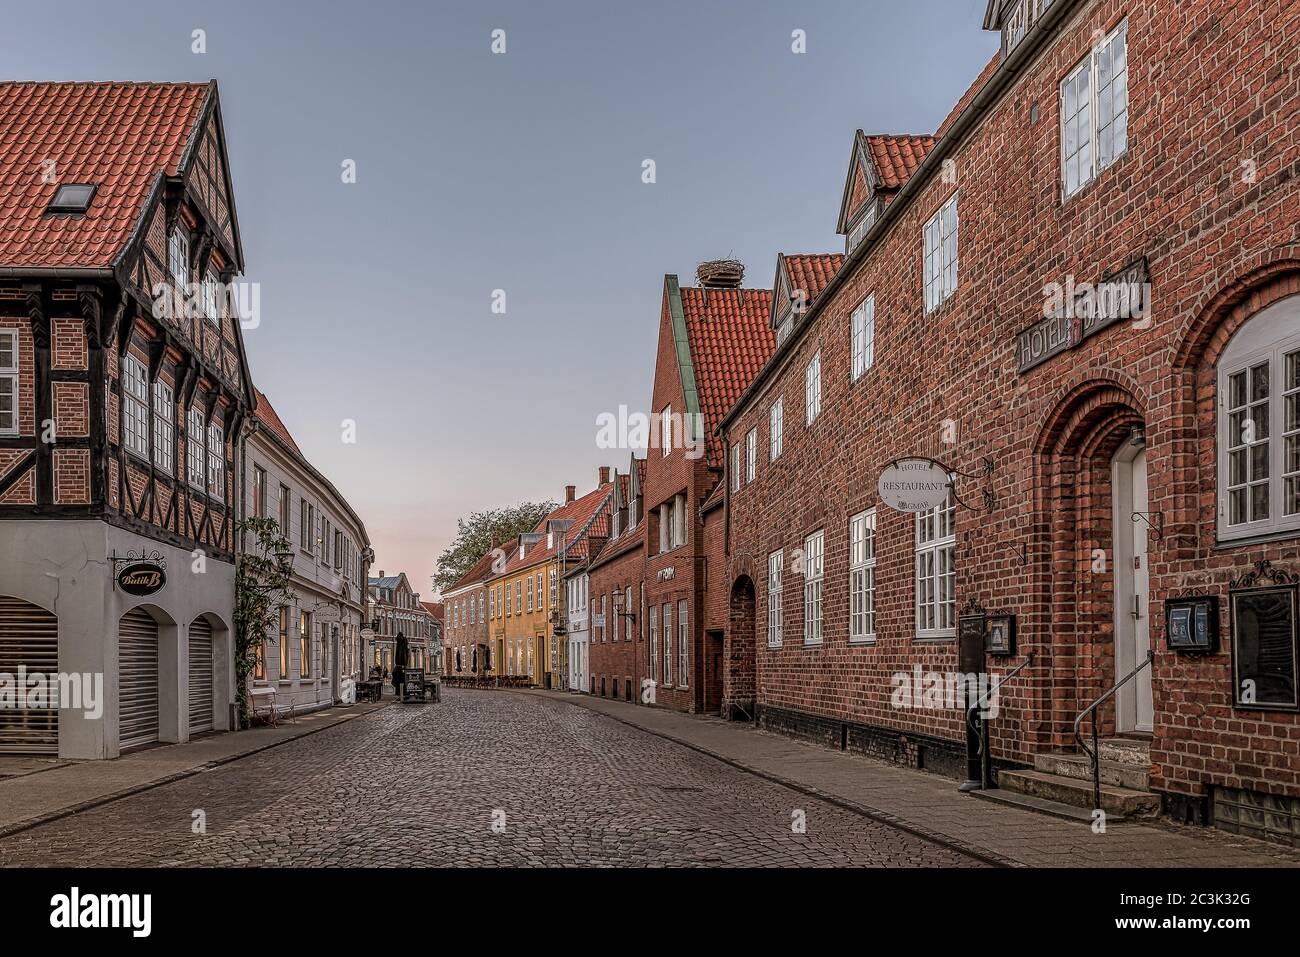 Eine alte gepflasterte Straße in der mittelalterlichen Stadt Ribe, Dänemark, 29. Mai 2020 Stockfoto